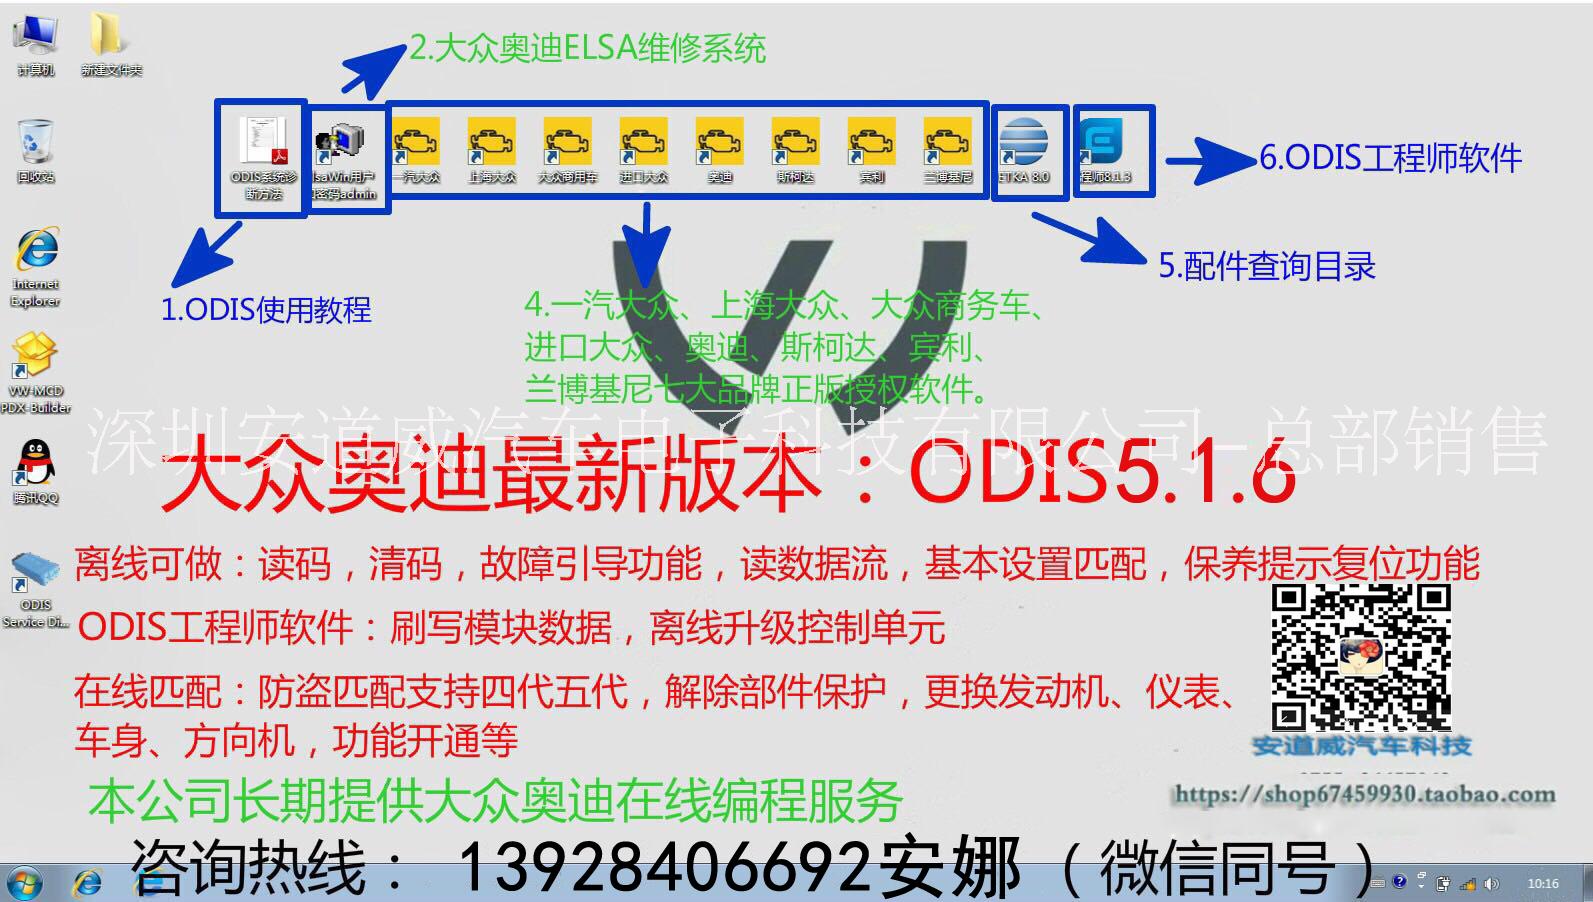 大众奥迪专用检测仪5054A新版ODIS516支持在线编程匹配